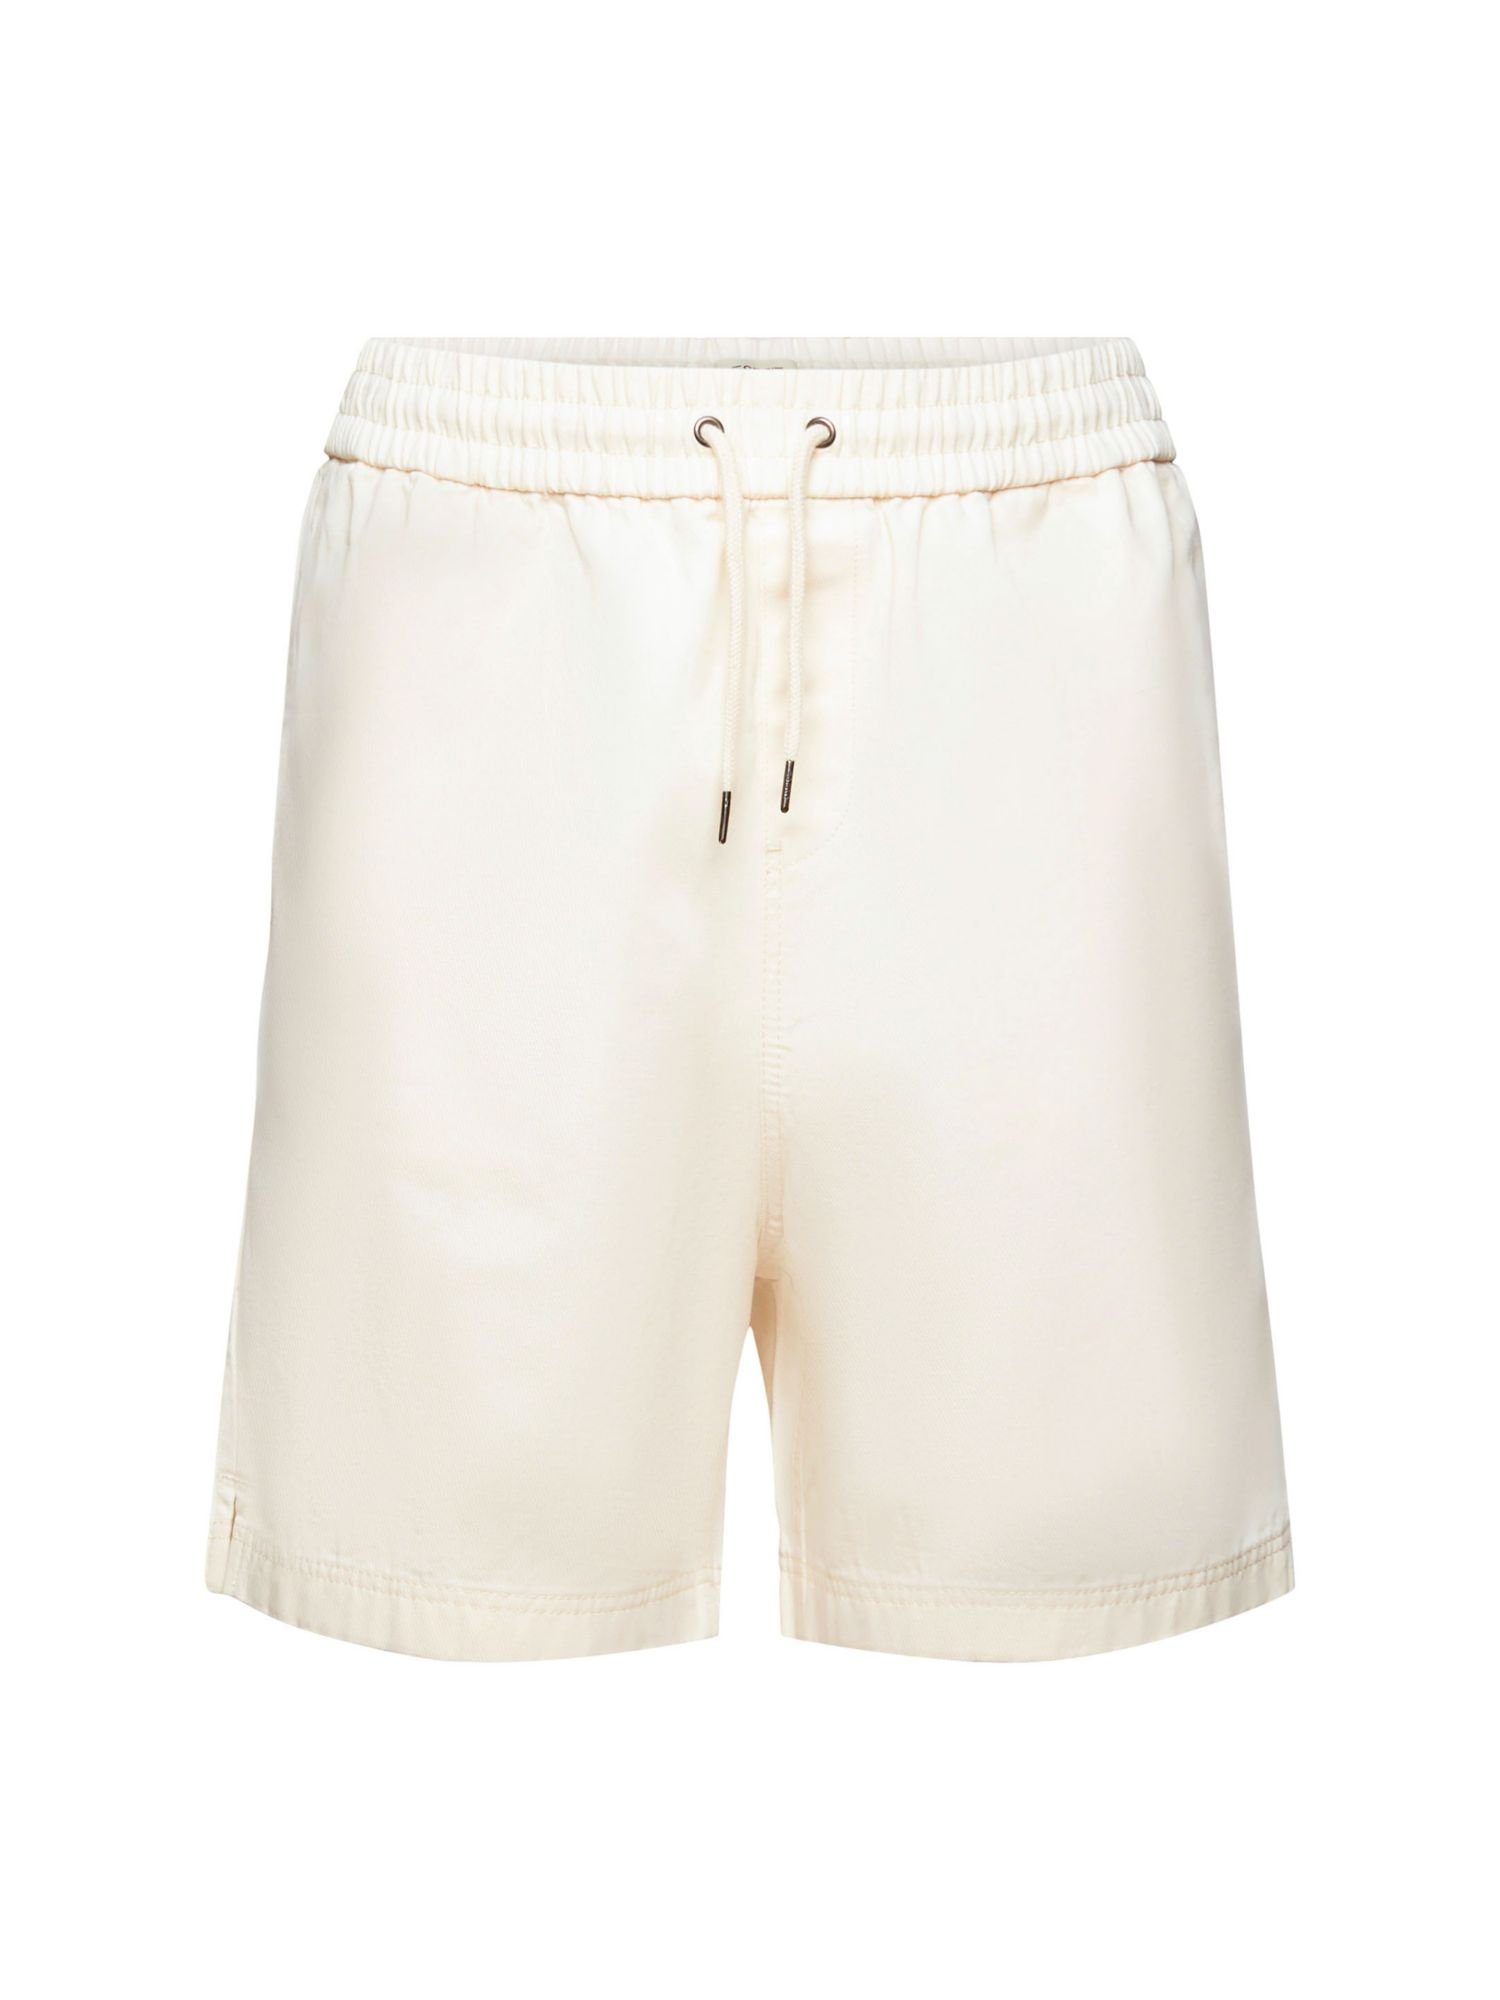 Esprit Bermudas Shorts aus reiner Baumwolle mit Print hinten